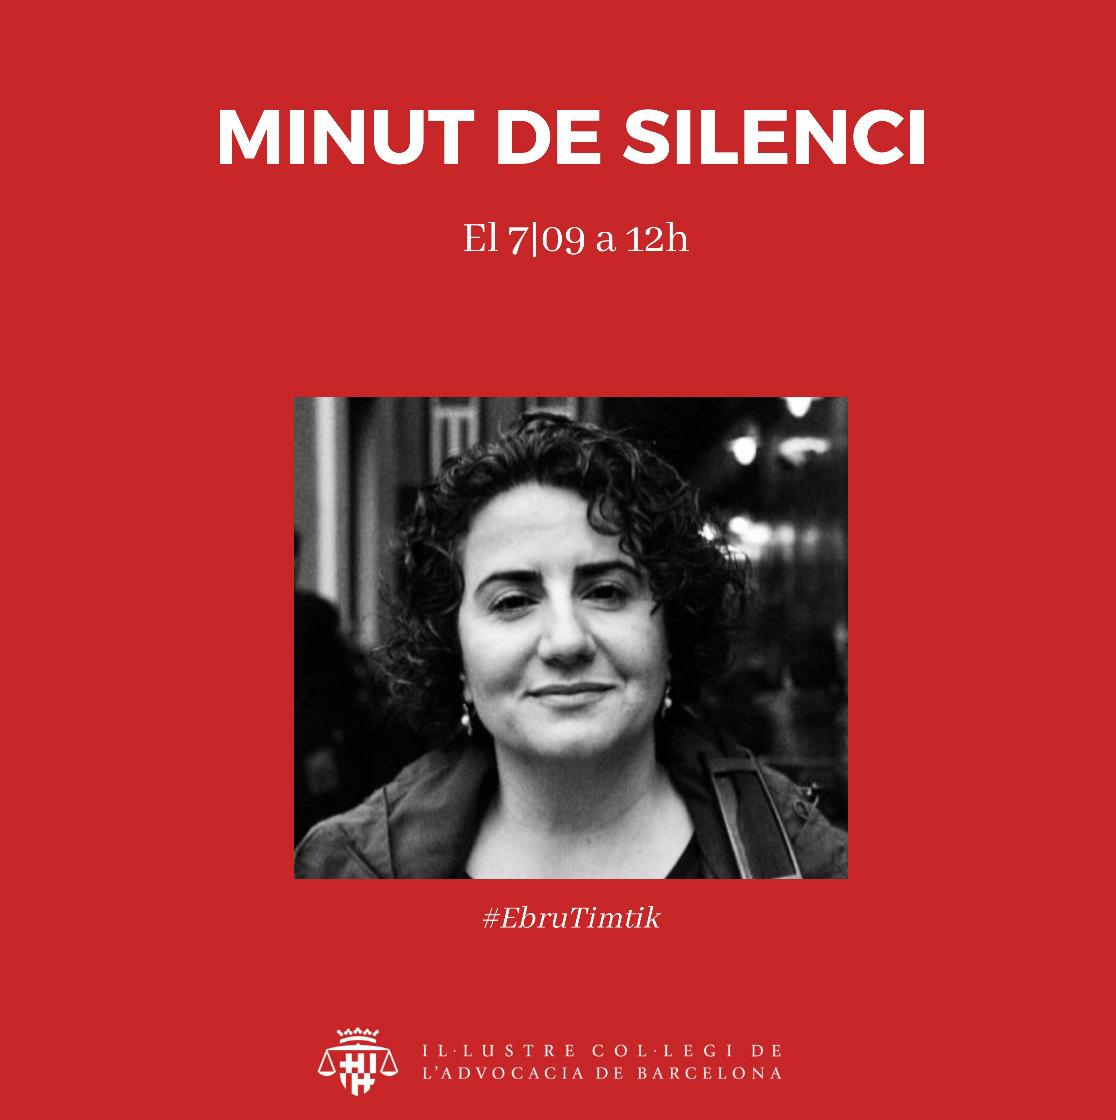 Minut de silenci en record de l'advocada Ebru Timtik